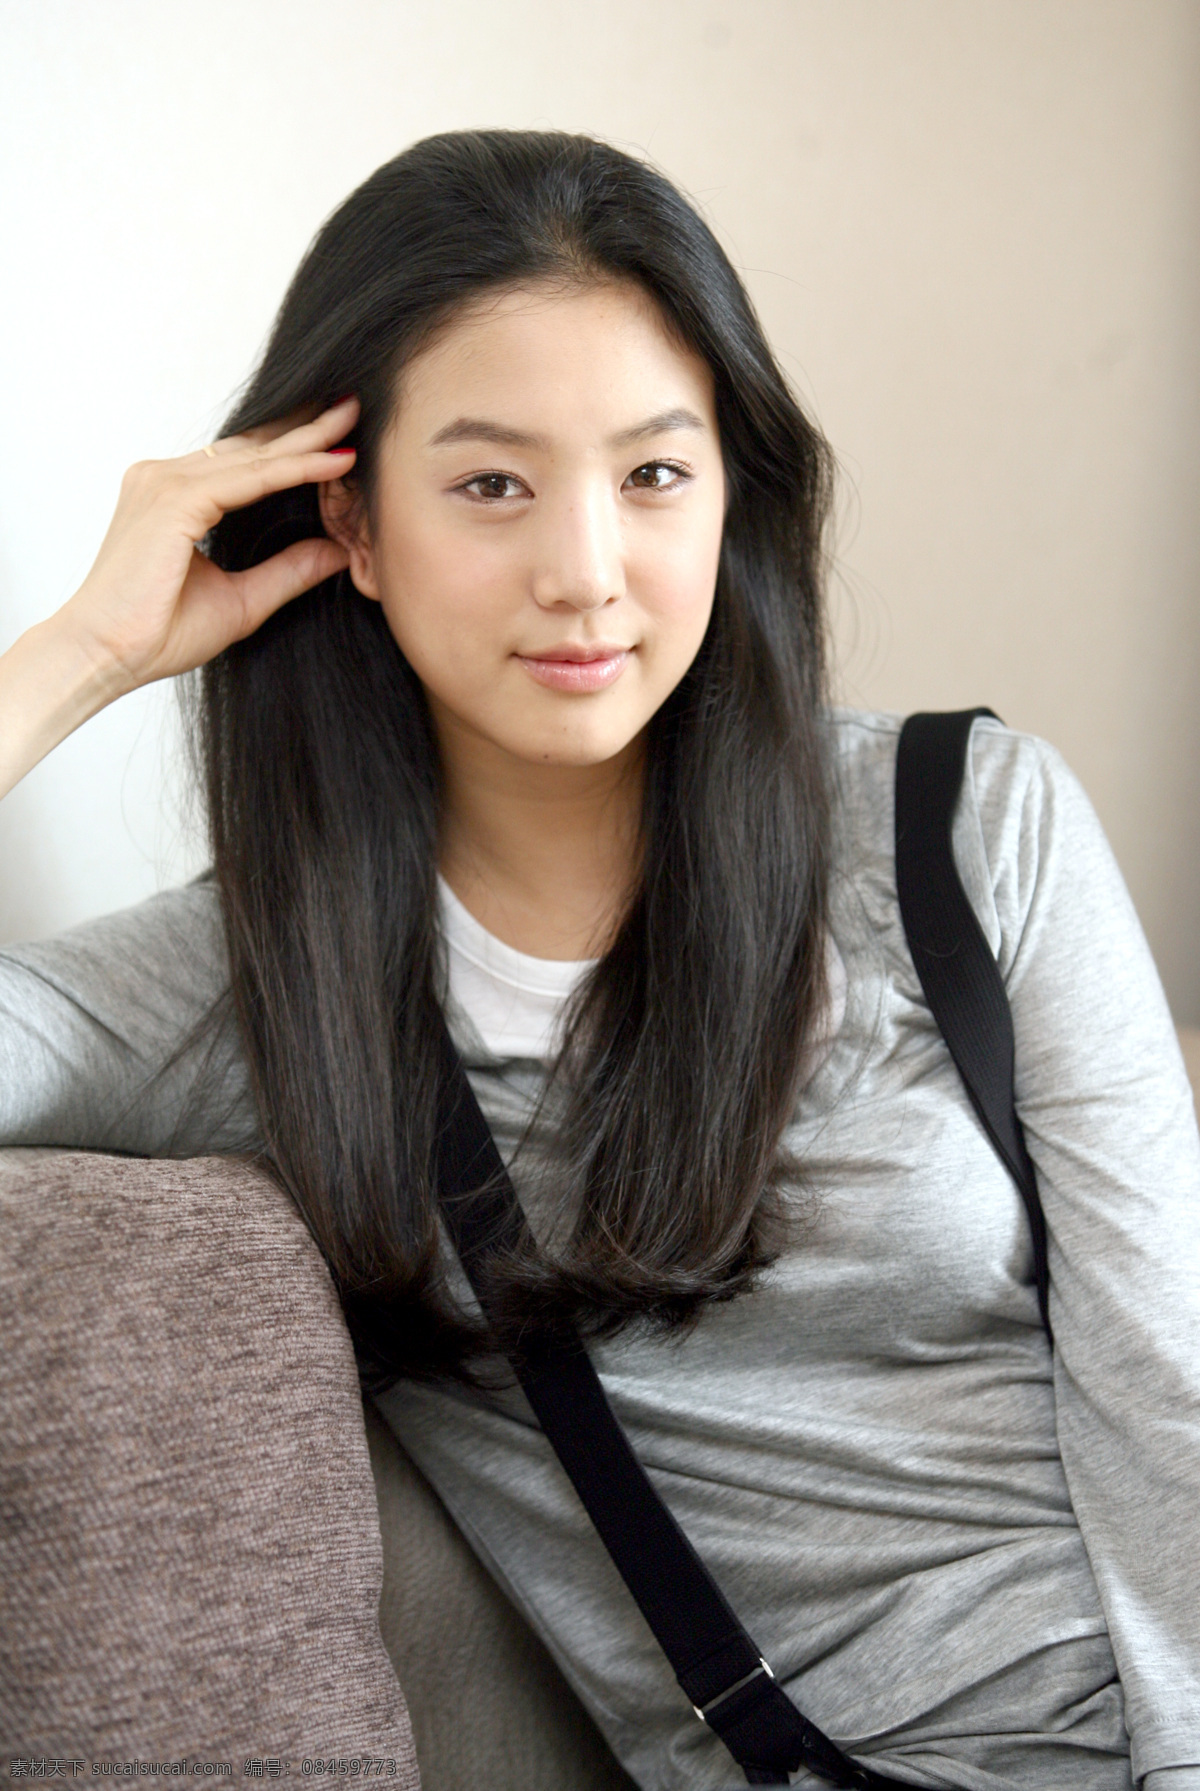 韩国歌手 明星 明星偶像 女性 女人 时尚美女 性感美女 美女模特 美女写真 名人明星 明星图片 人物图片